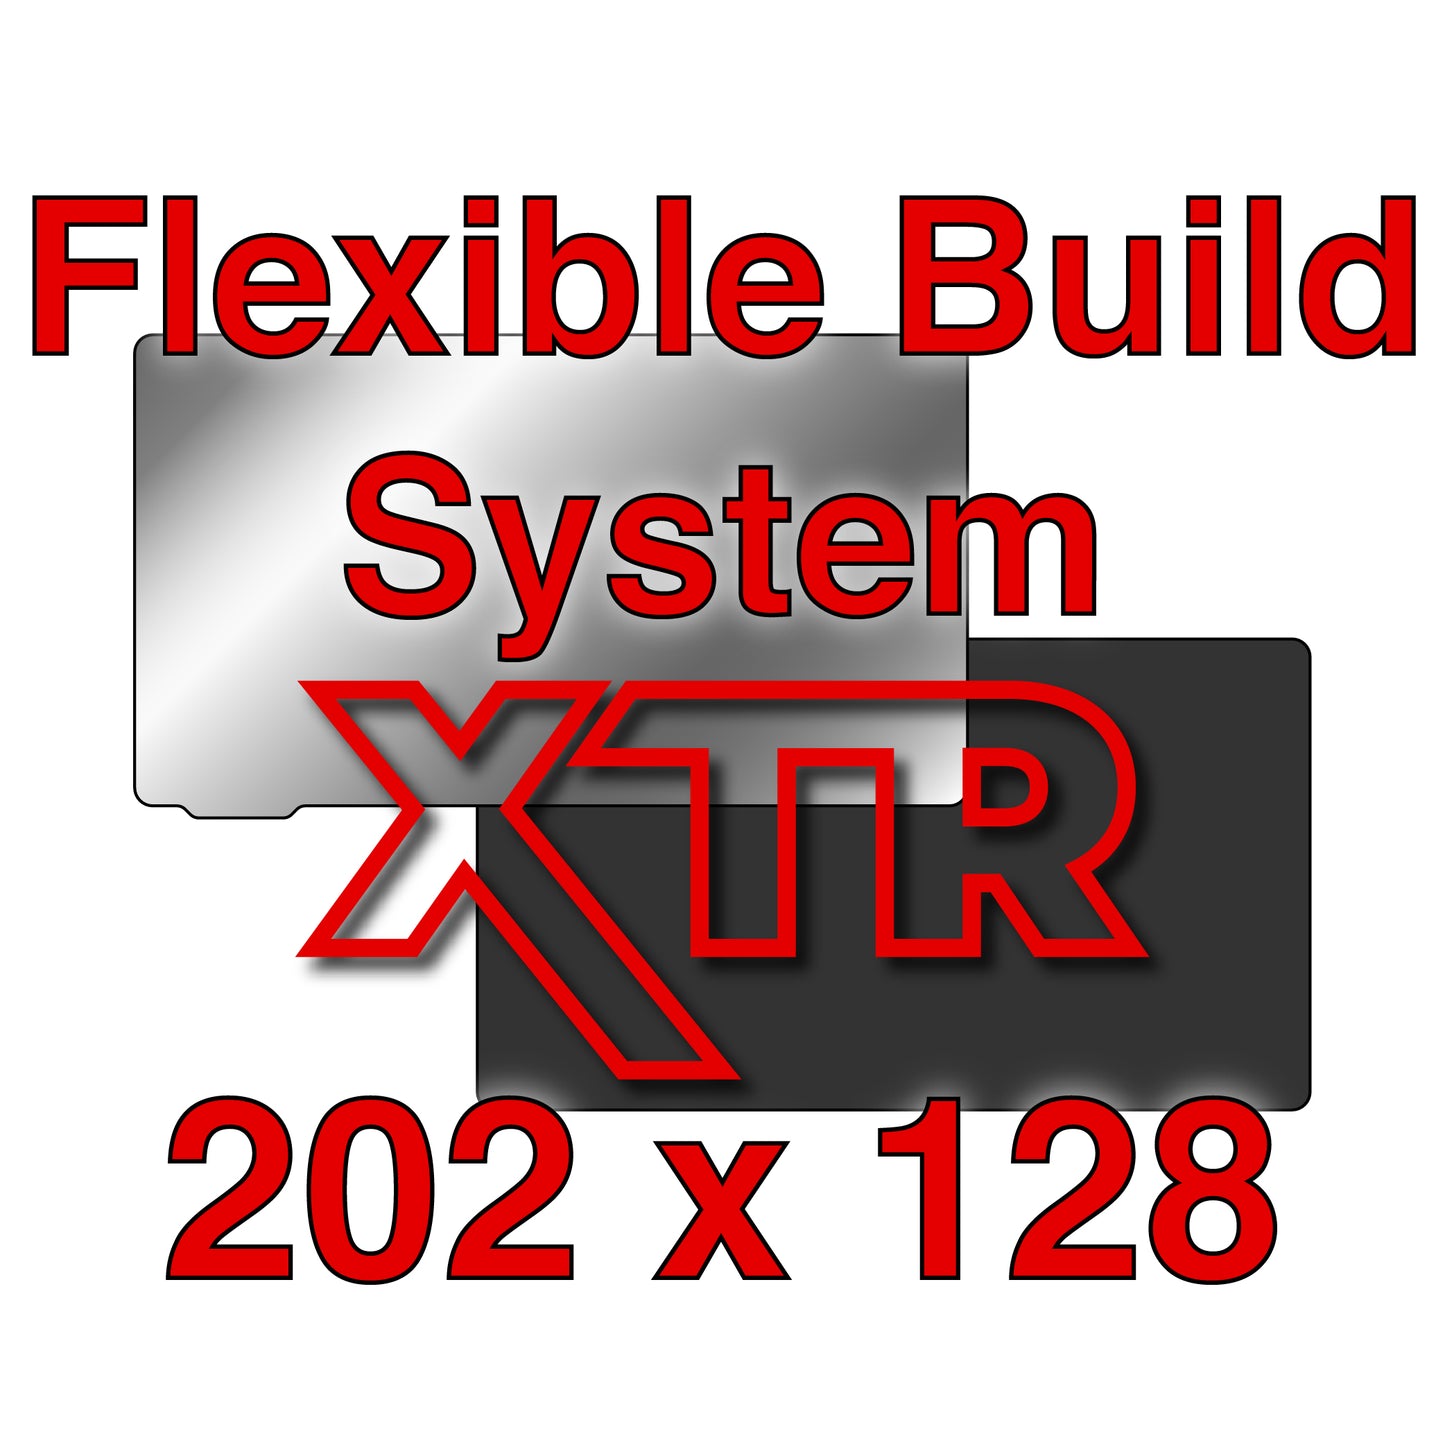 XTR Kit - Anycubic Photon M3 Plus and Mono X - 202 x 128